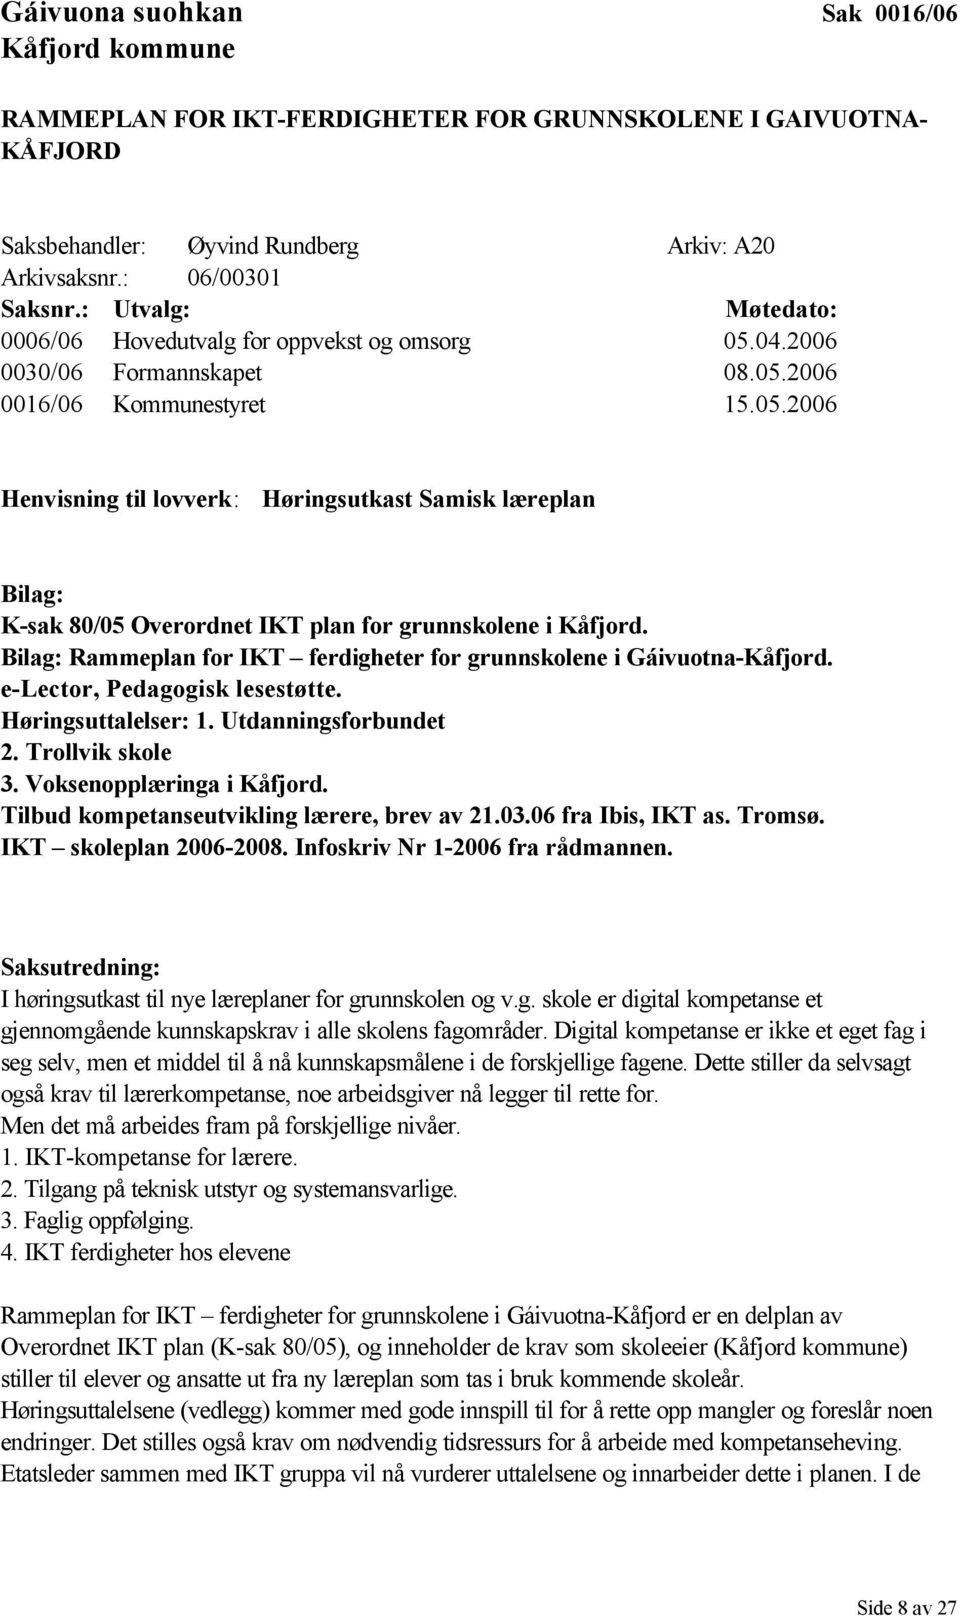 Bilag: Rammeplan for IKT ferdigheter for grunnskolene i Gáivuotna-Kåfjord. e-lector, Pedagogisk lesestøtte. Høringsuttalelser: 1. Utdanningsforbundet 2. Trollvik skole 3. Voksenopplæringa i Kåfjord.